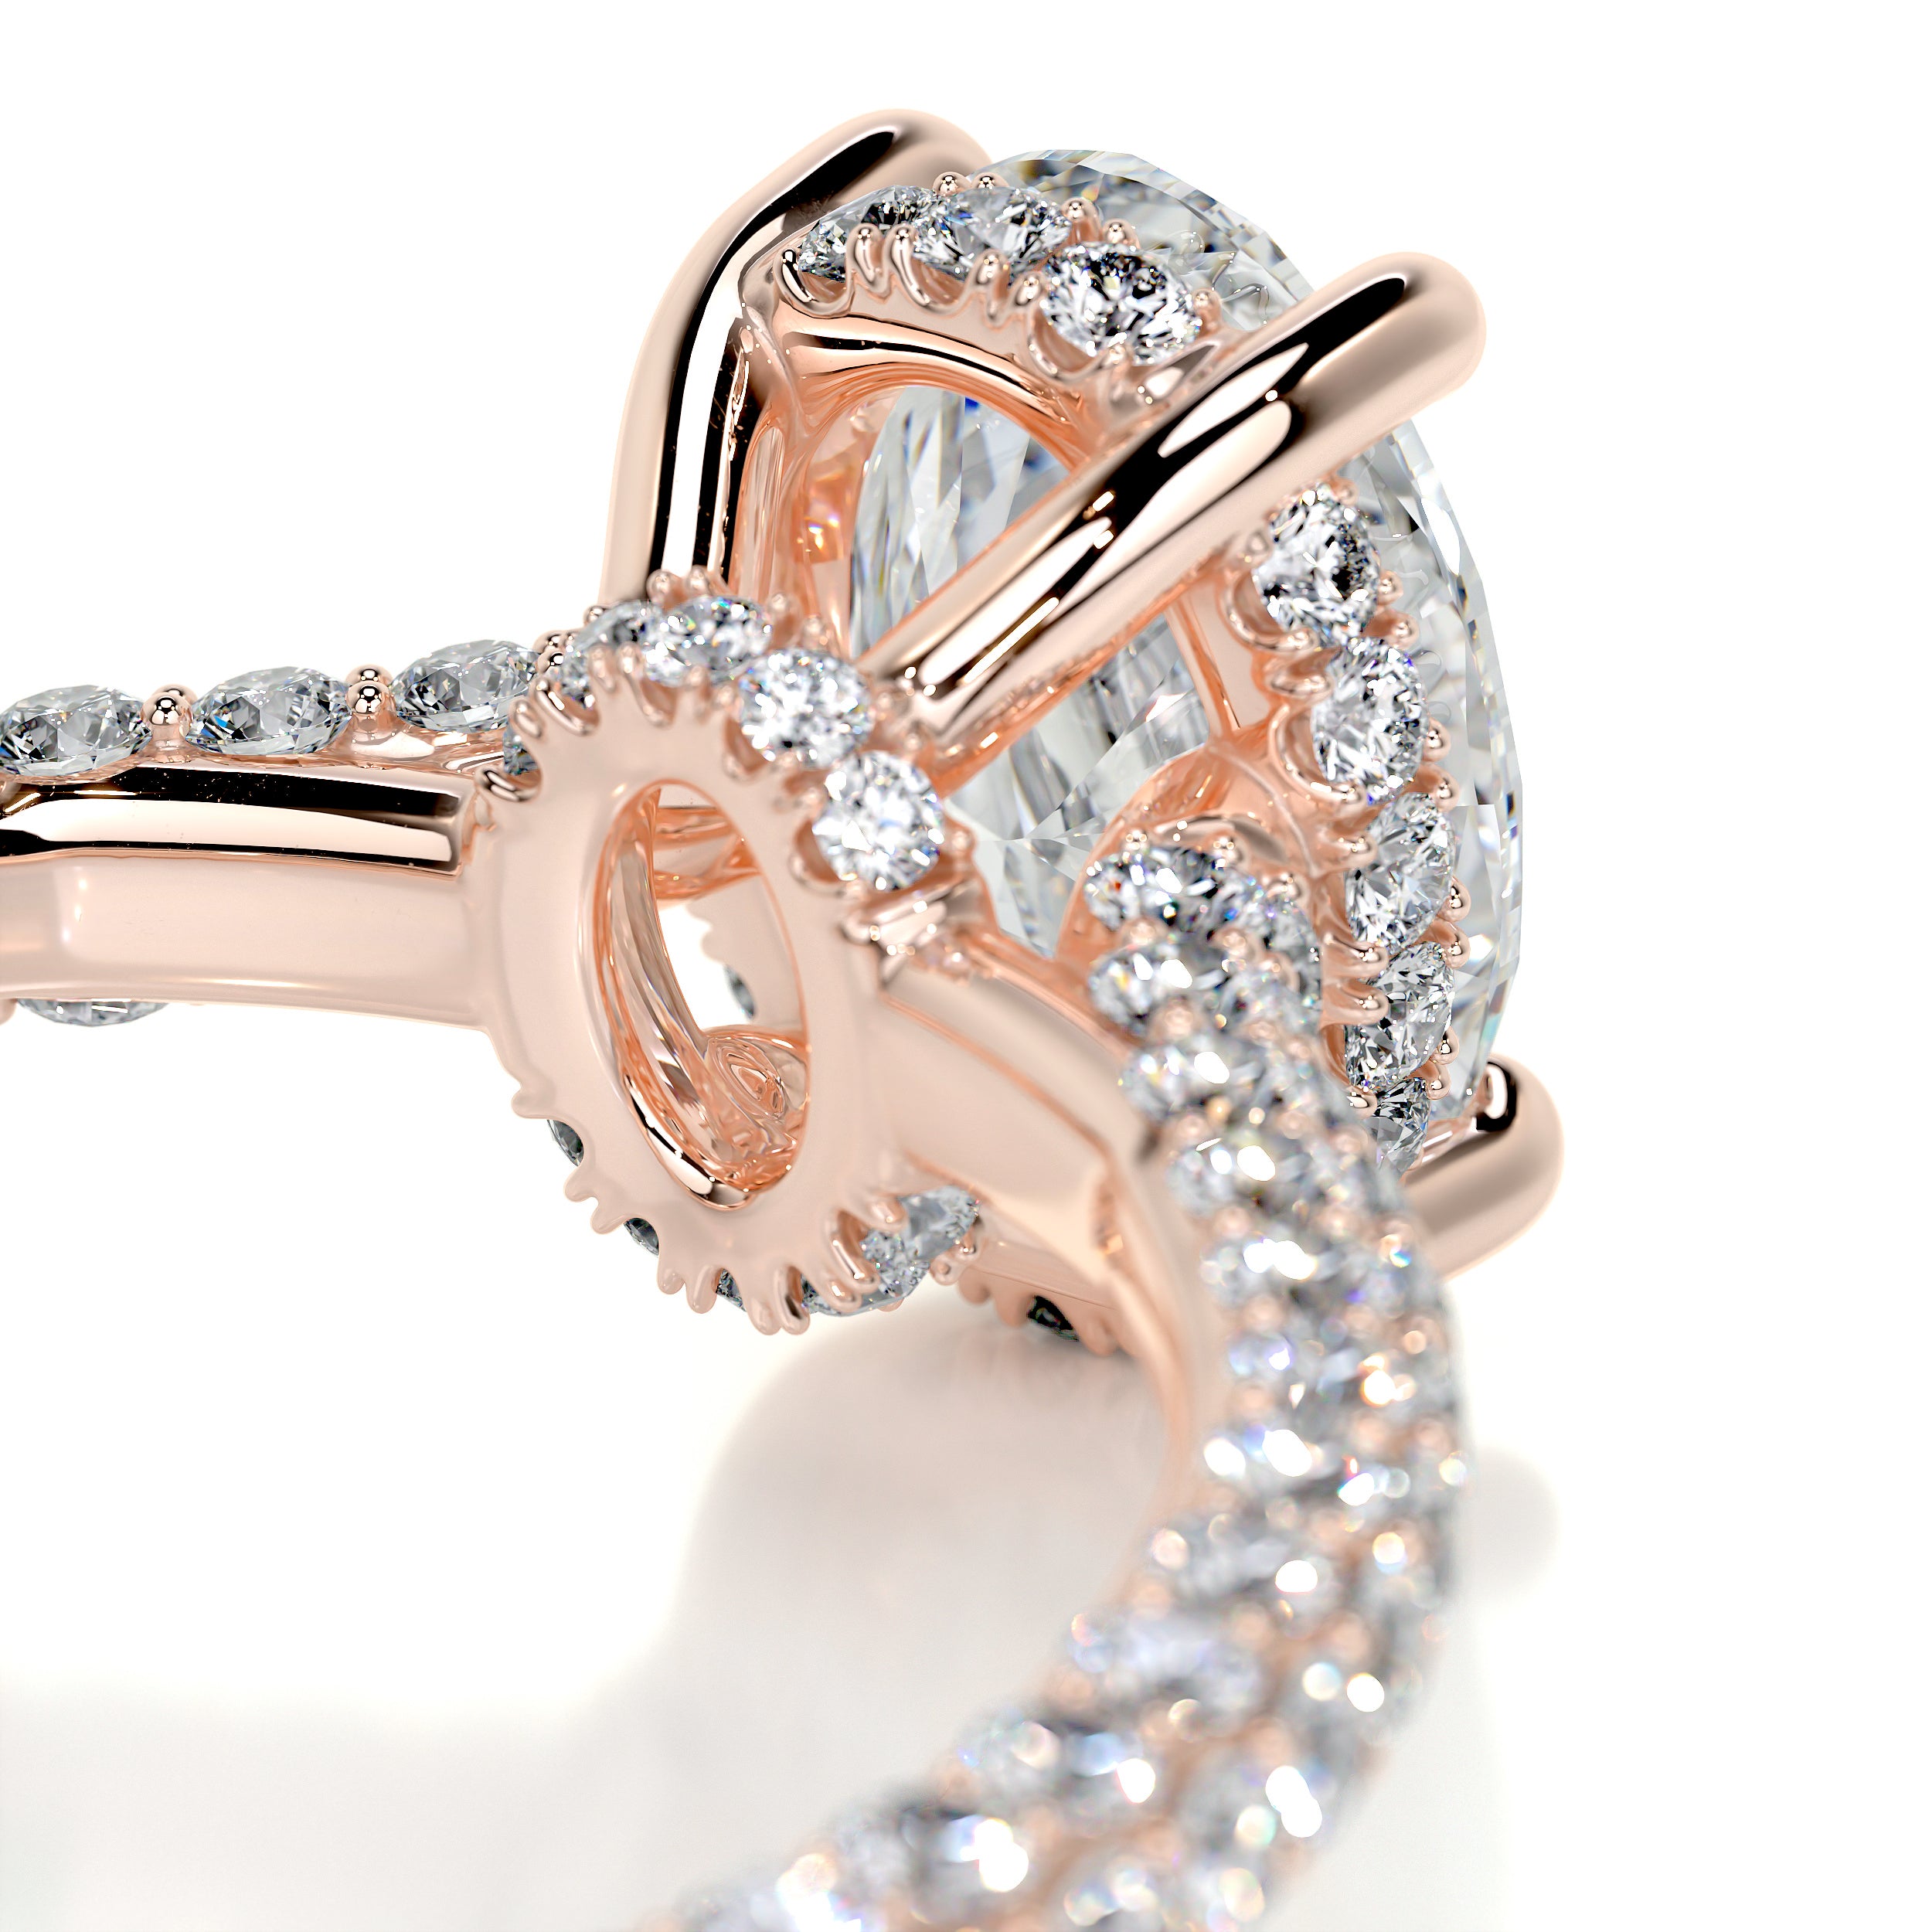 Rebecca Diamond Engagement Ring   (1.8 Carat) -14K Rose Gold